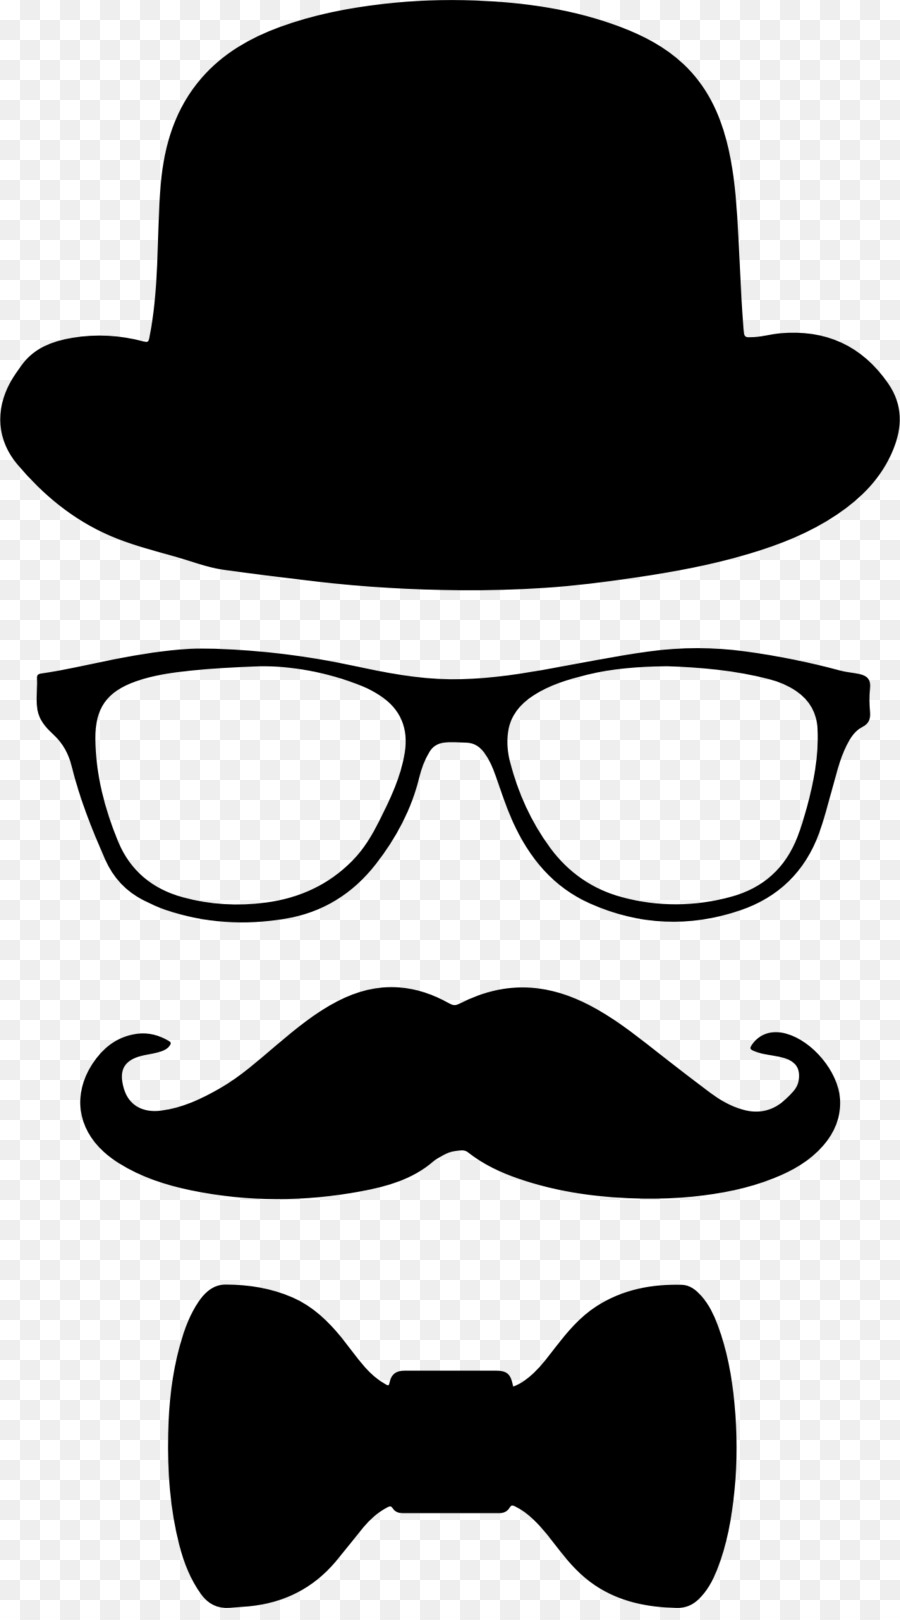 Moustache Top hat Glasses Bow tie - moustache png download - 1276*2280 - Free Transparent Moustache png Download.